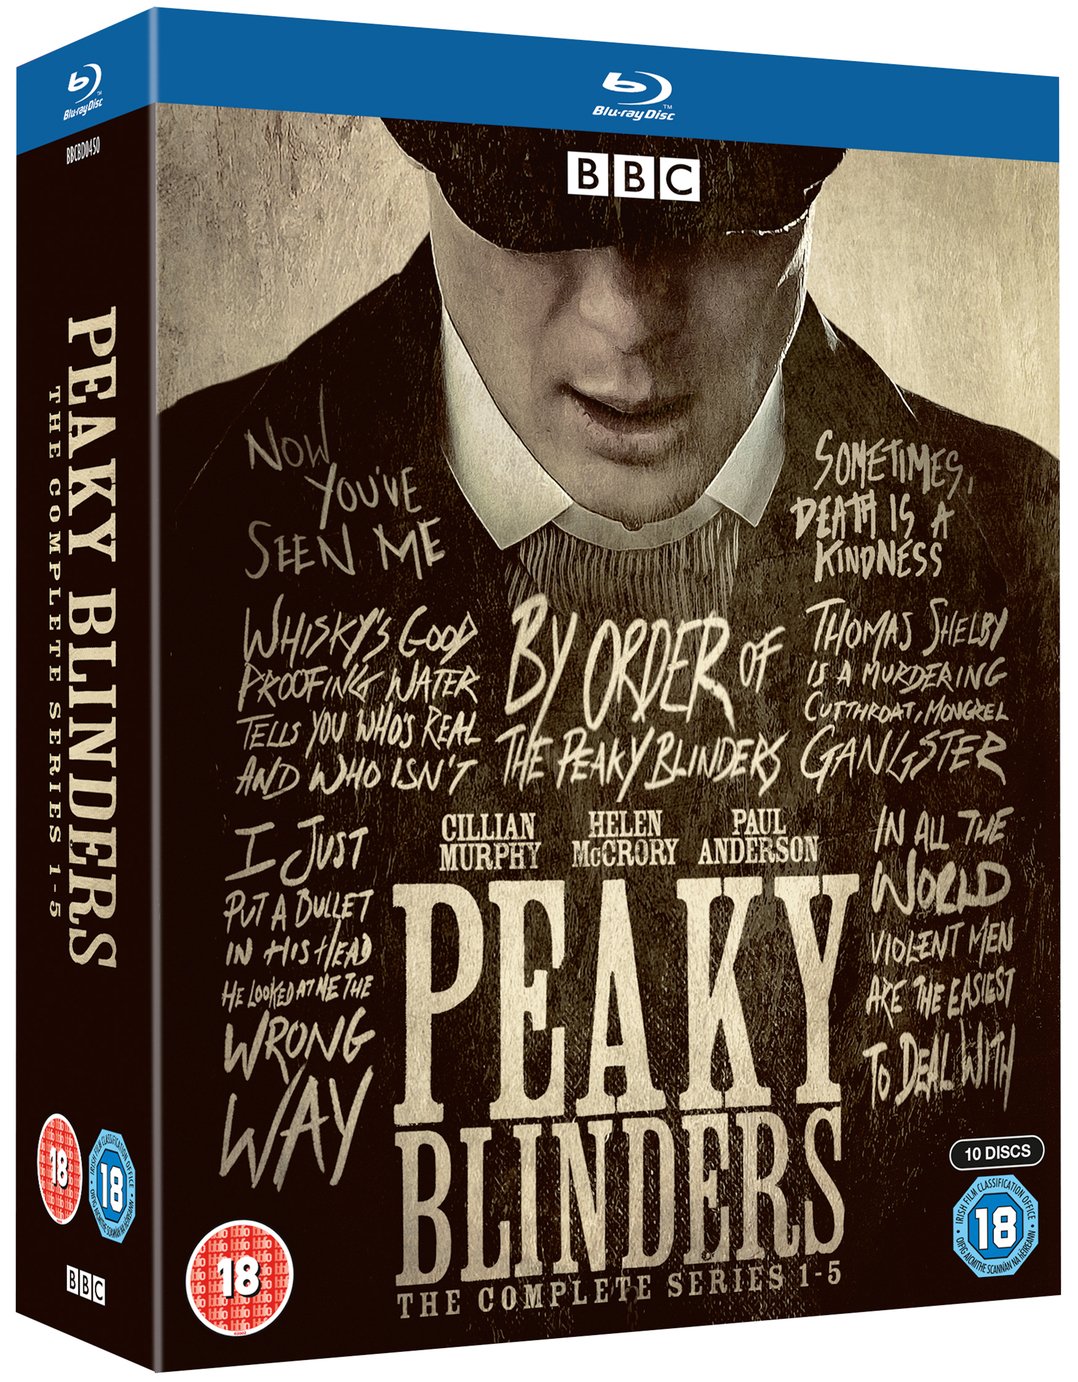 Peaky Blinders Series 1-5 Blu-ray Box Set